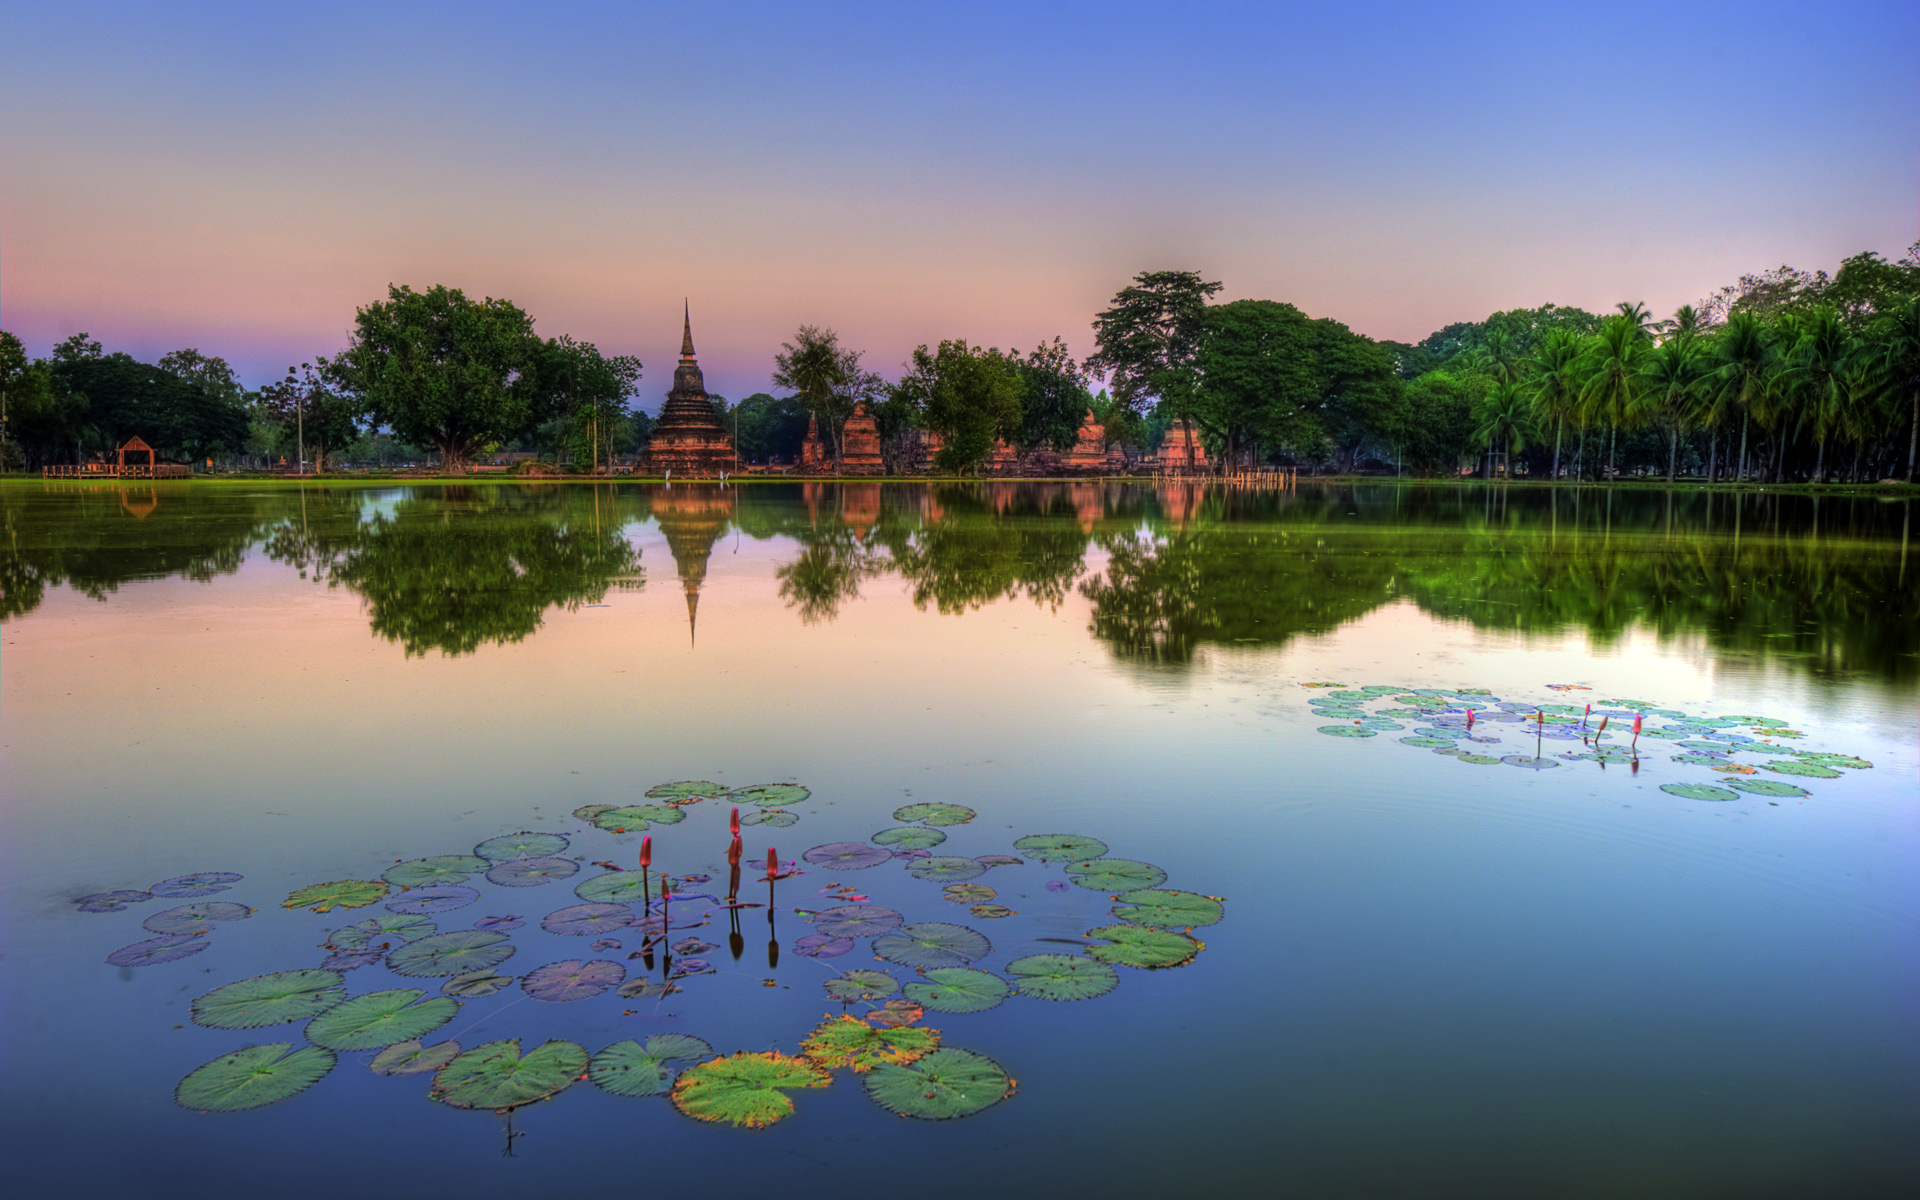 Descarga gratuita de fondo de pantalla para móvil de Paisaje, Parque, Fotografía, Tailandia.